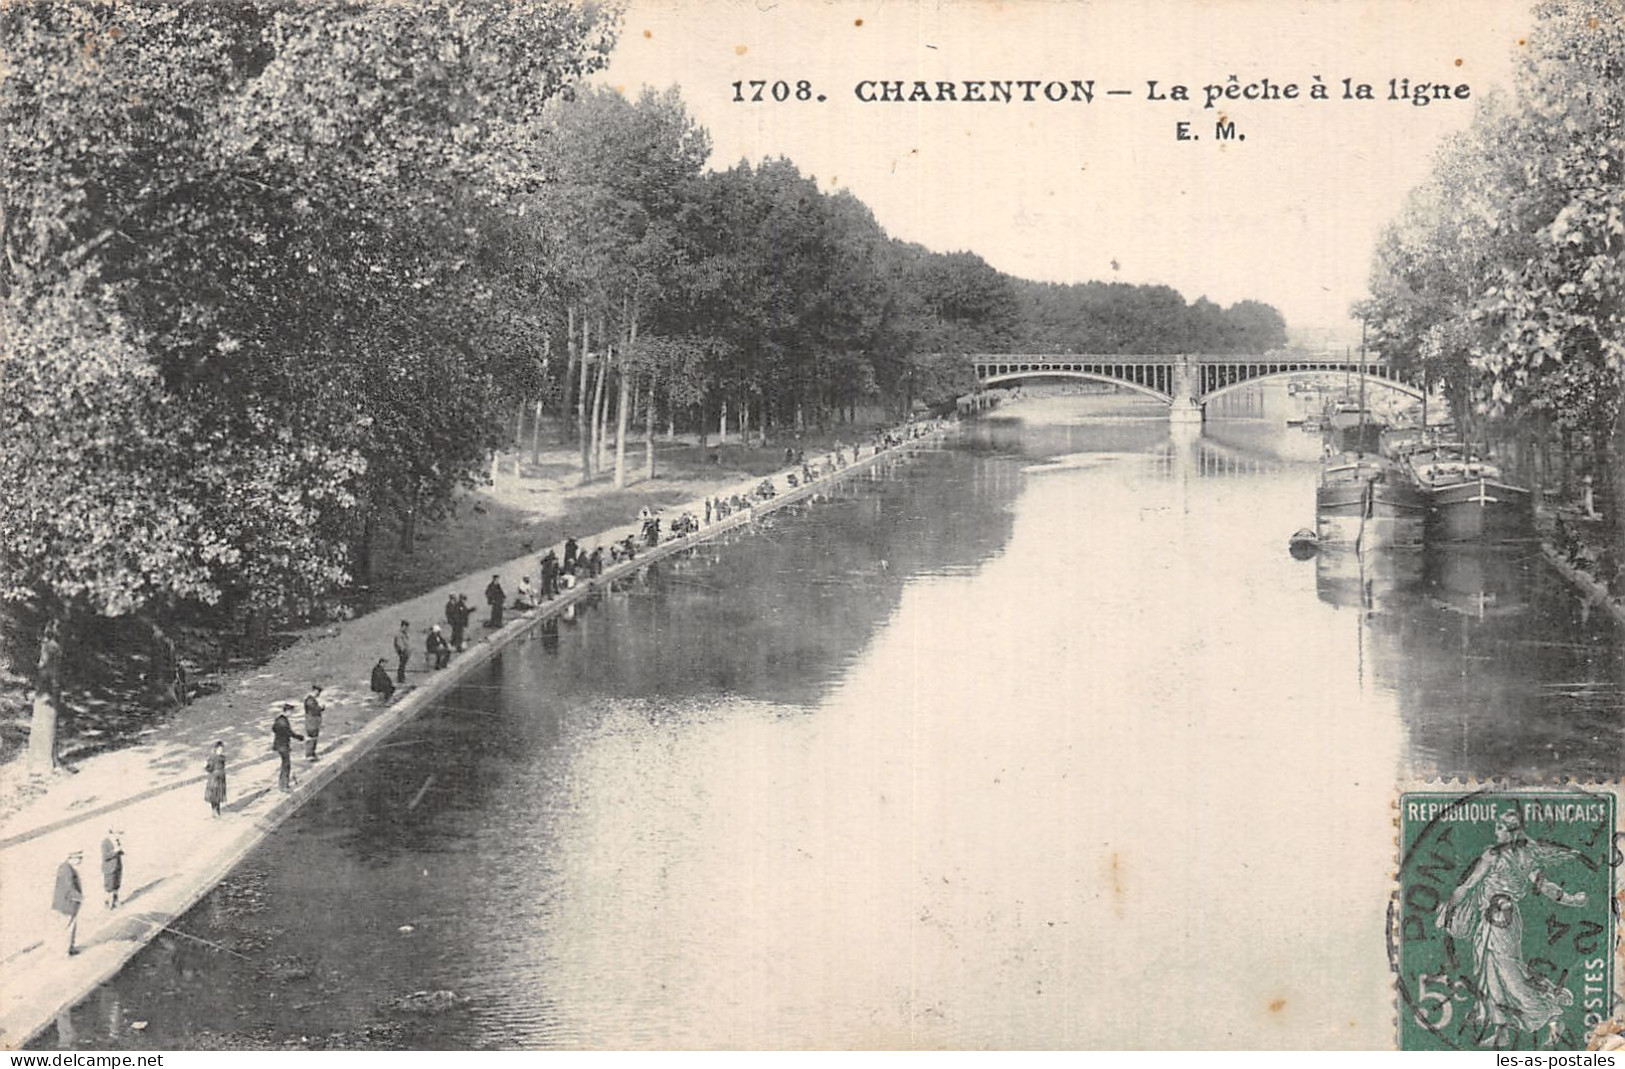 94 CHARENTON LA PECHE A LA LIGNE - Charenton Le Pont